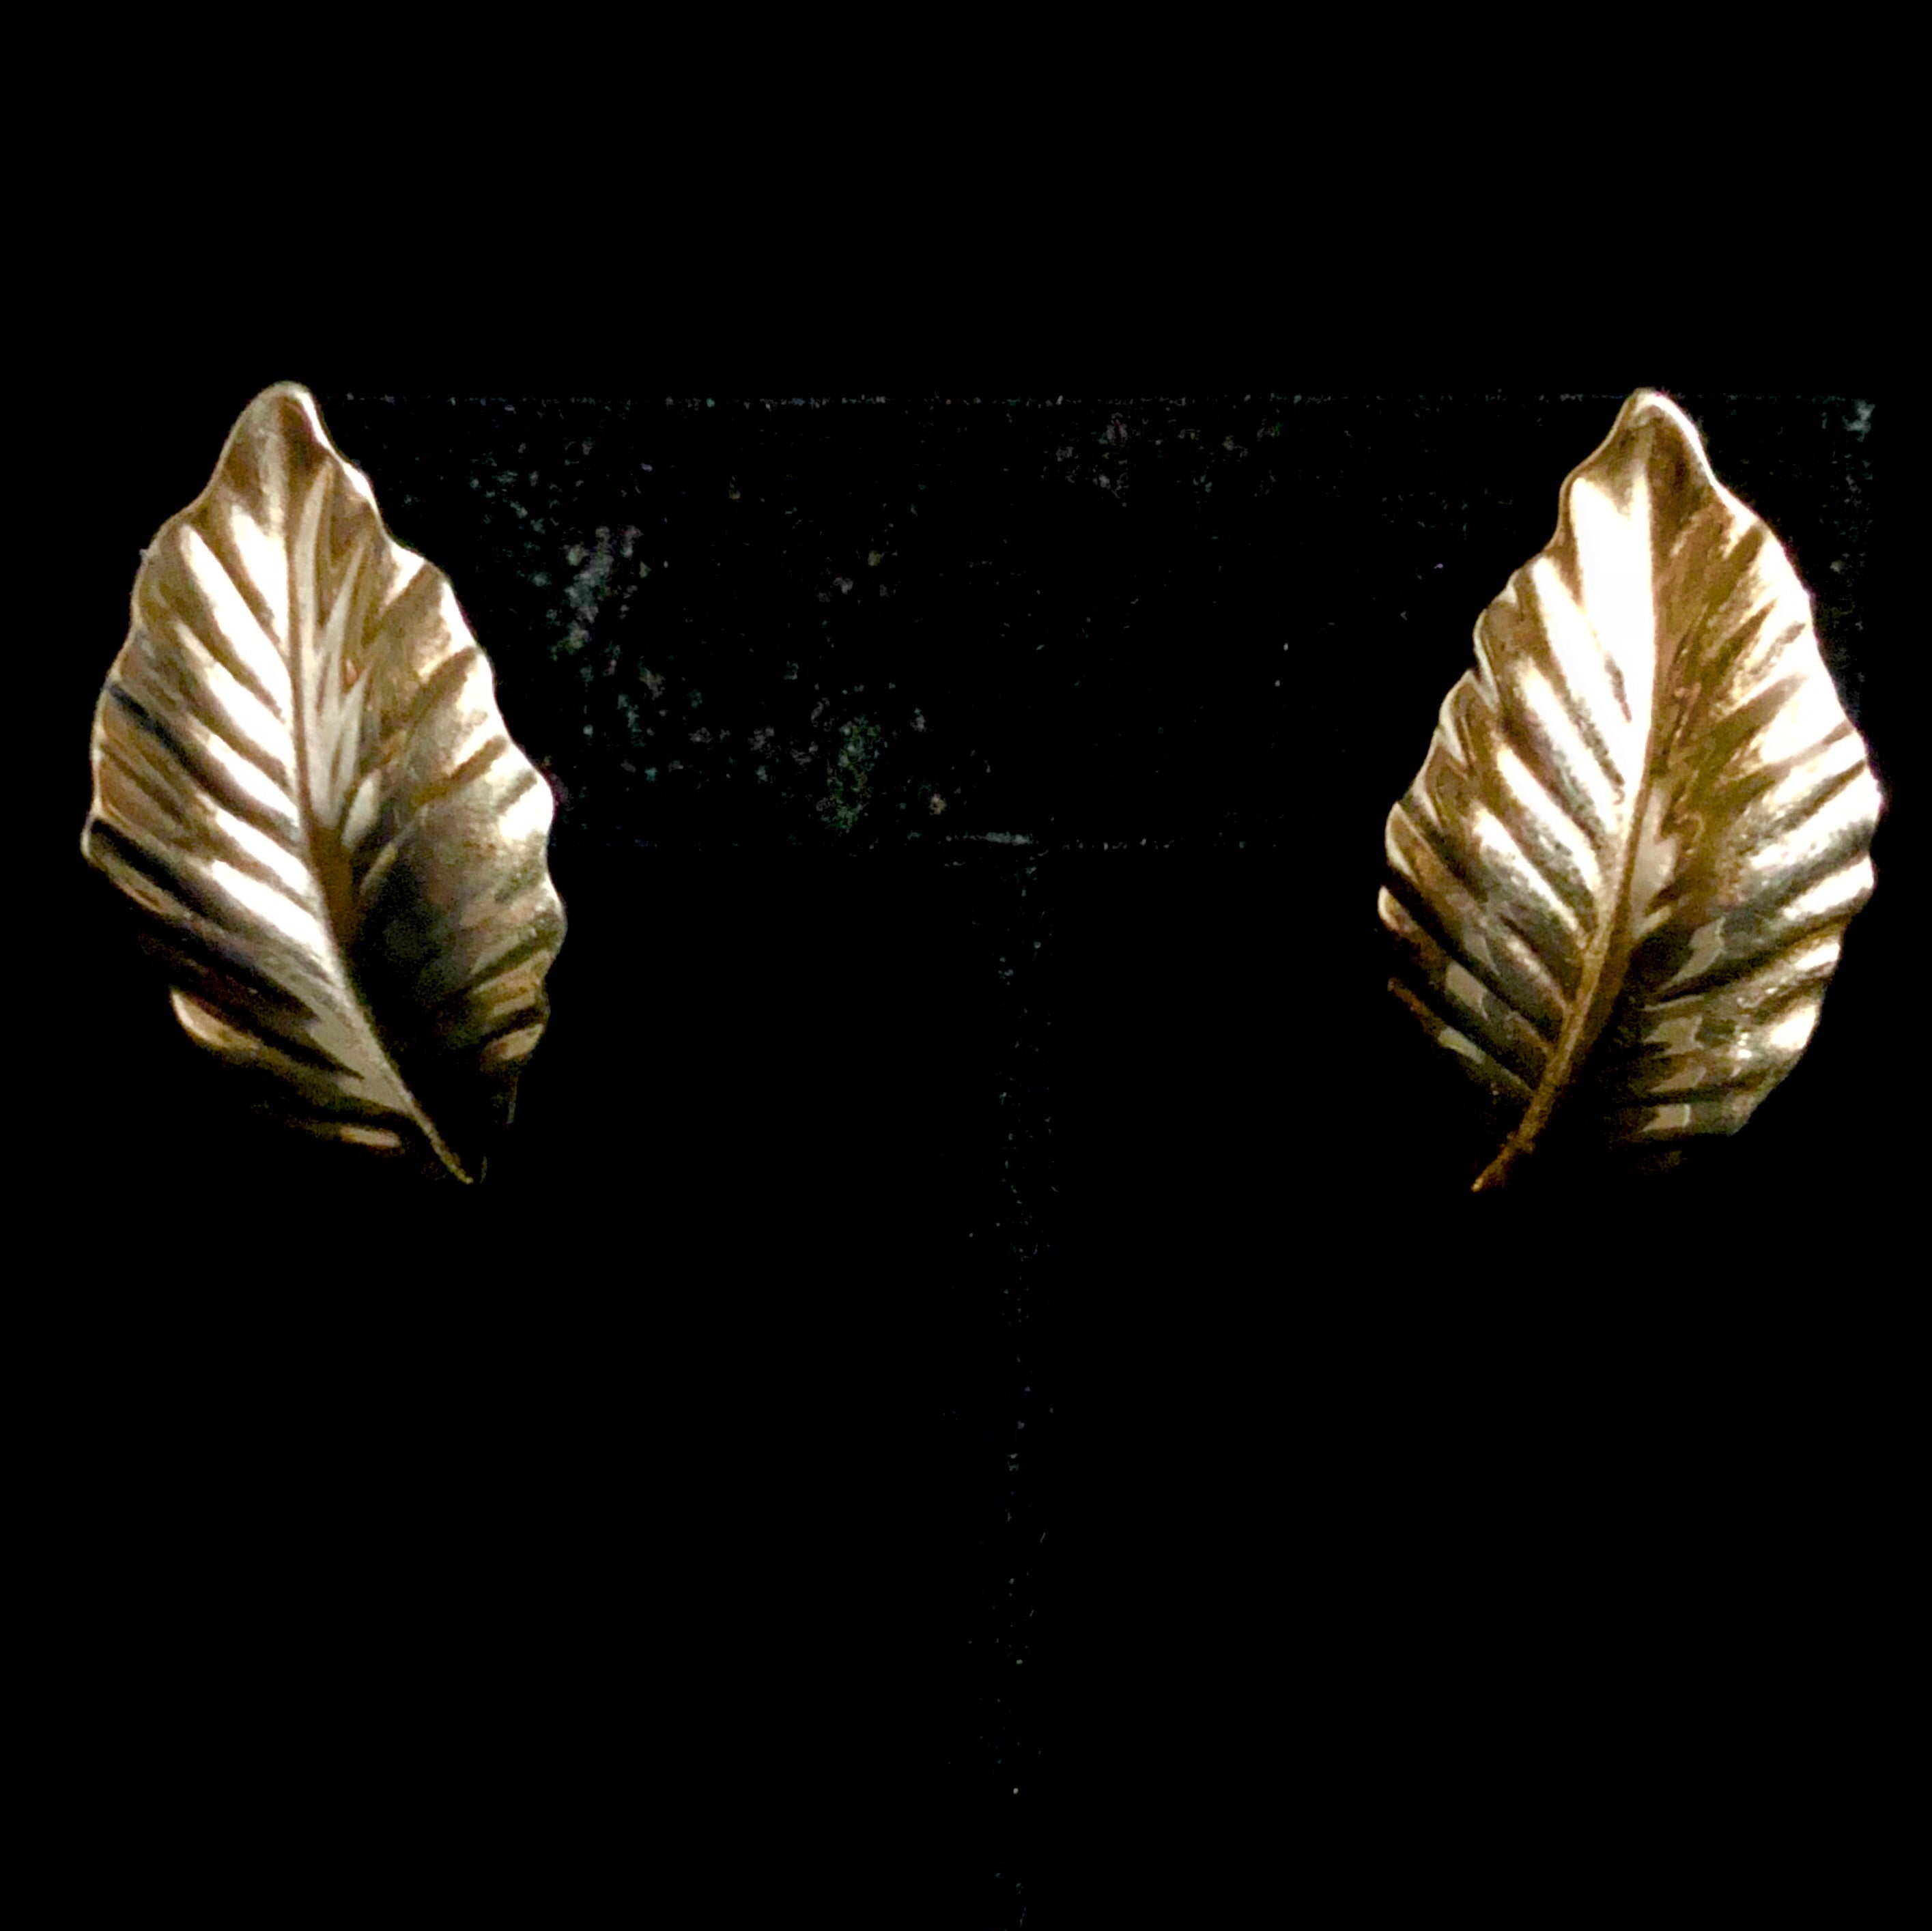 Vintage Louis Feraud Paris Earrings Gold Tone Leaf Design Signed , pierced.